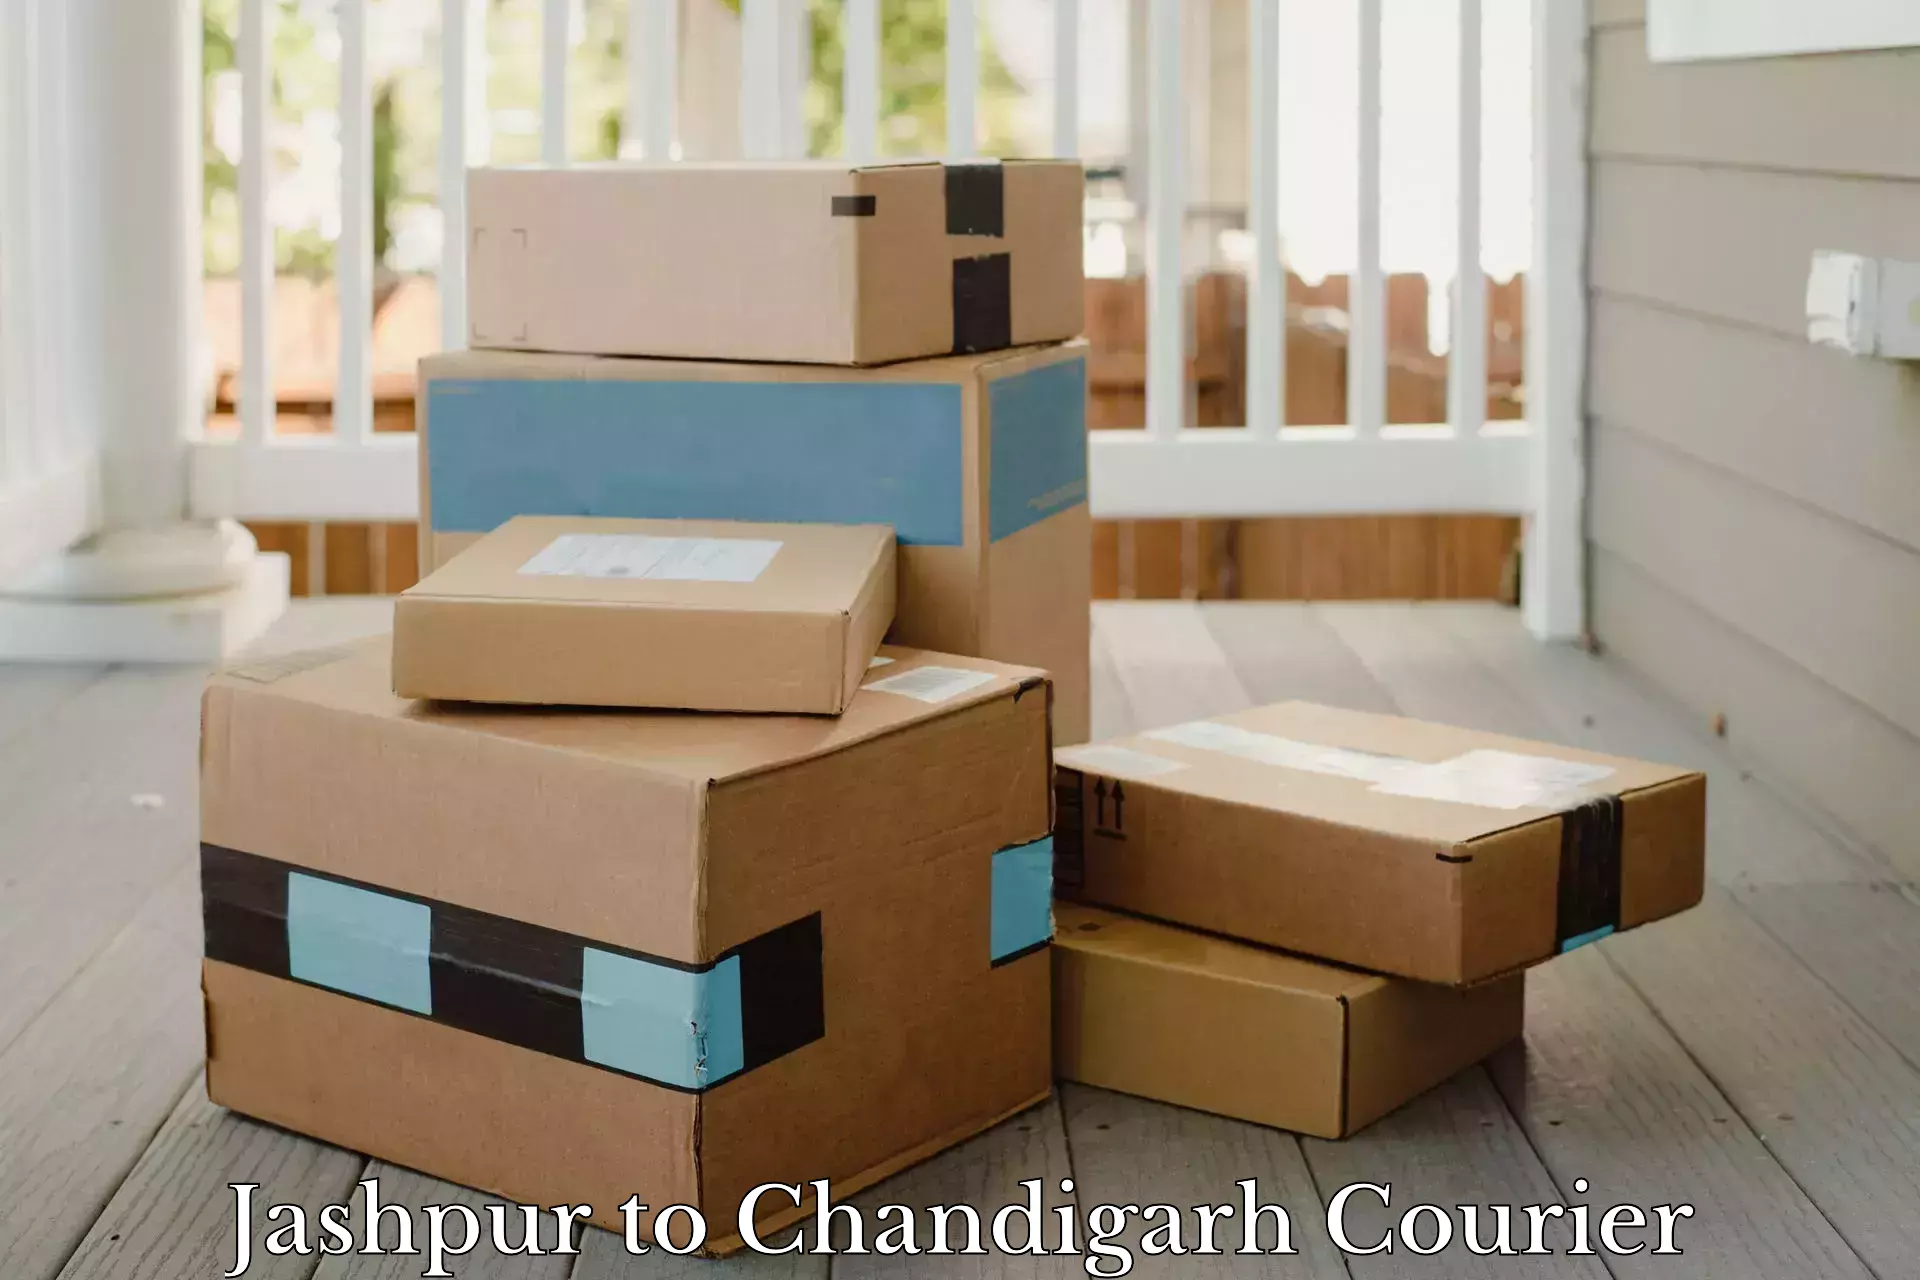 Cargo courier service Jashpur to Chandigarh